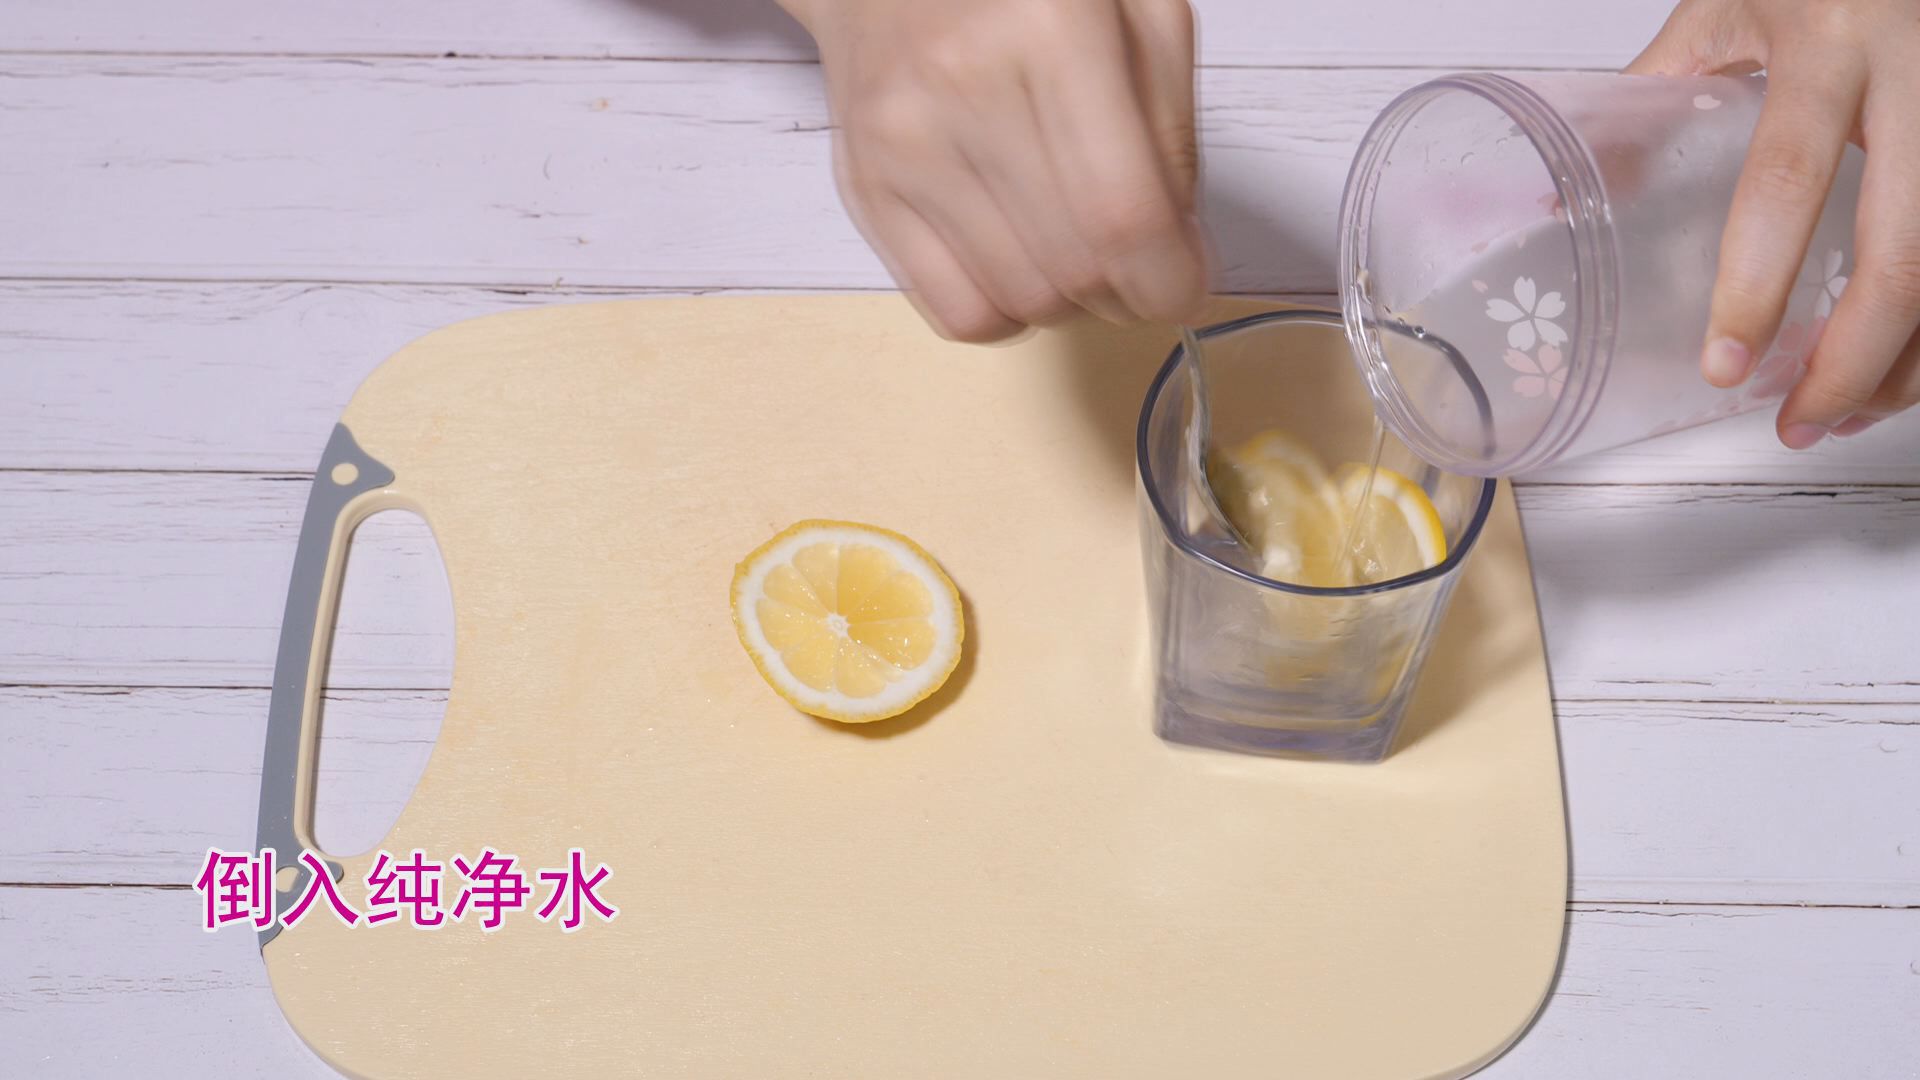 喝柠檬水会被晒黑吗 原因是什么呢